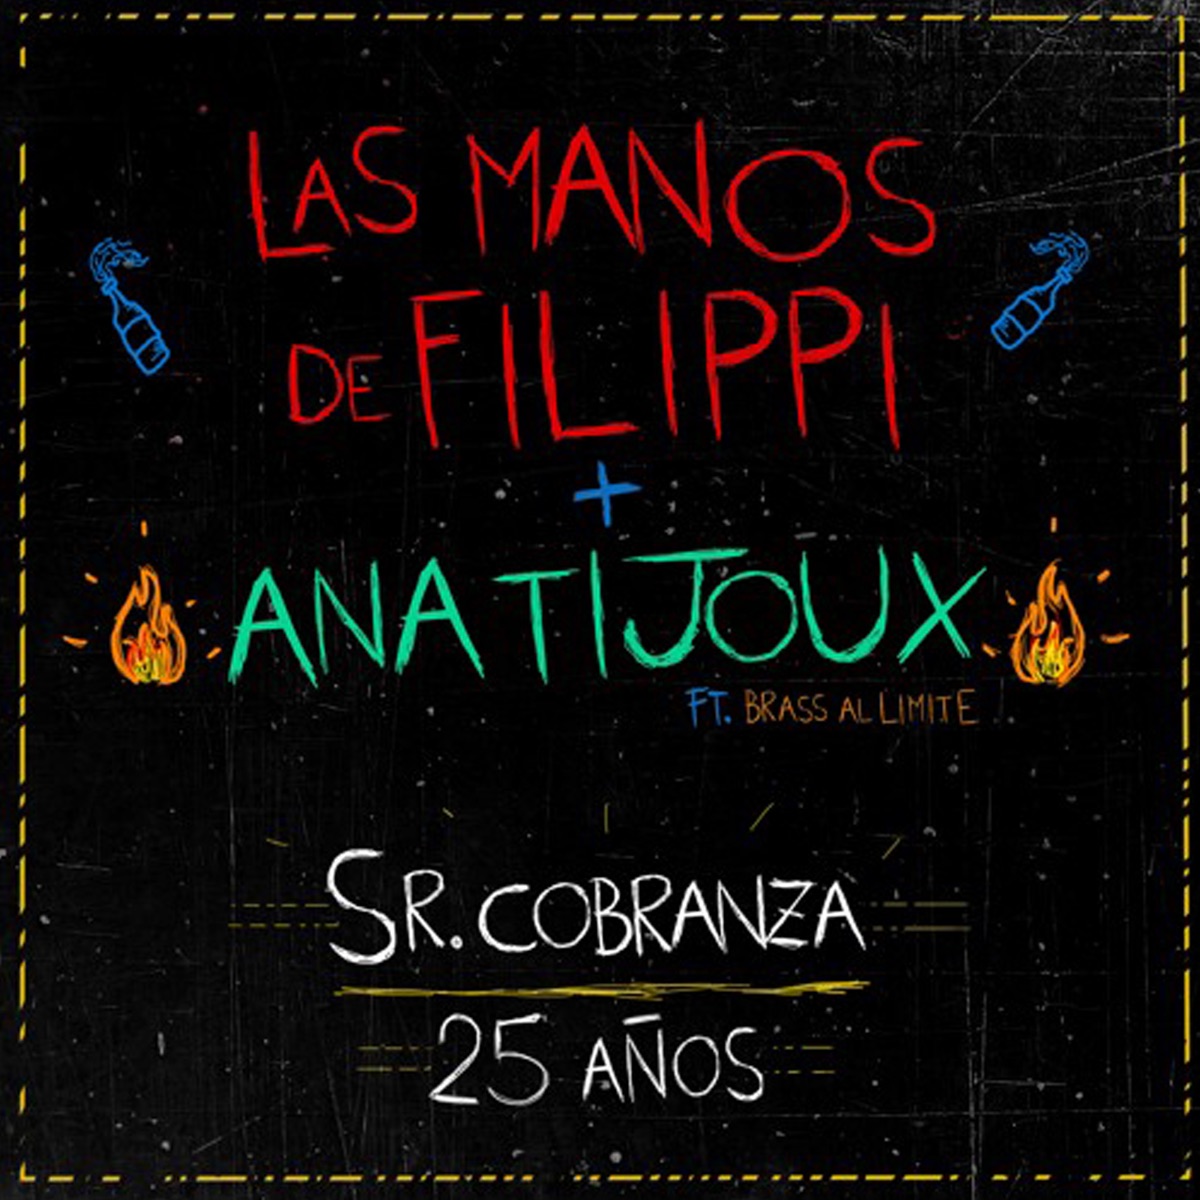 Las Manos Santas Van a Misa - EP by Las Manos de Filippi on Apple Music